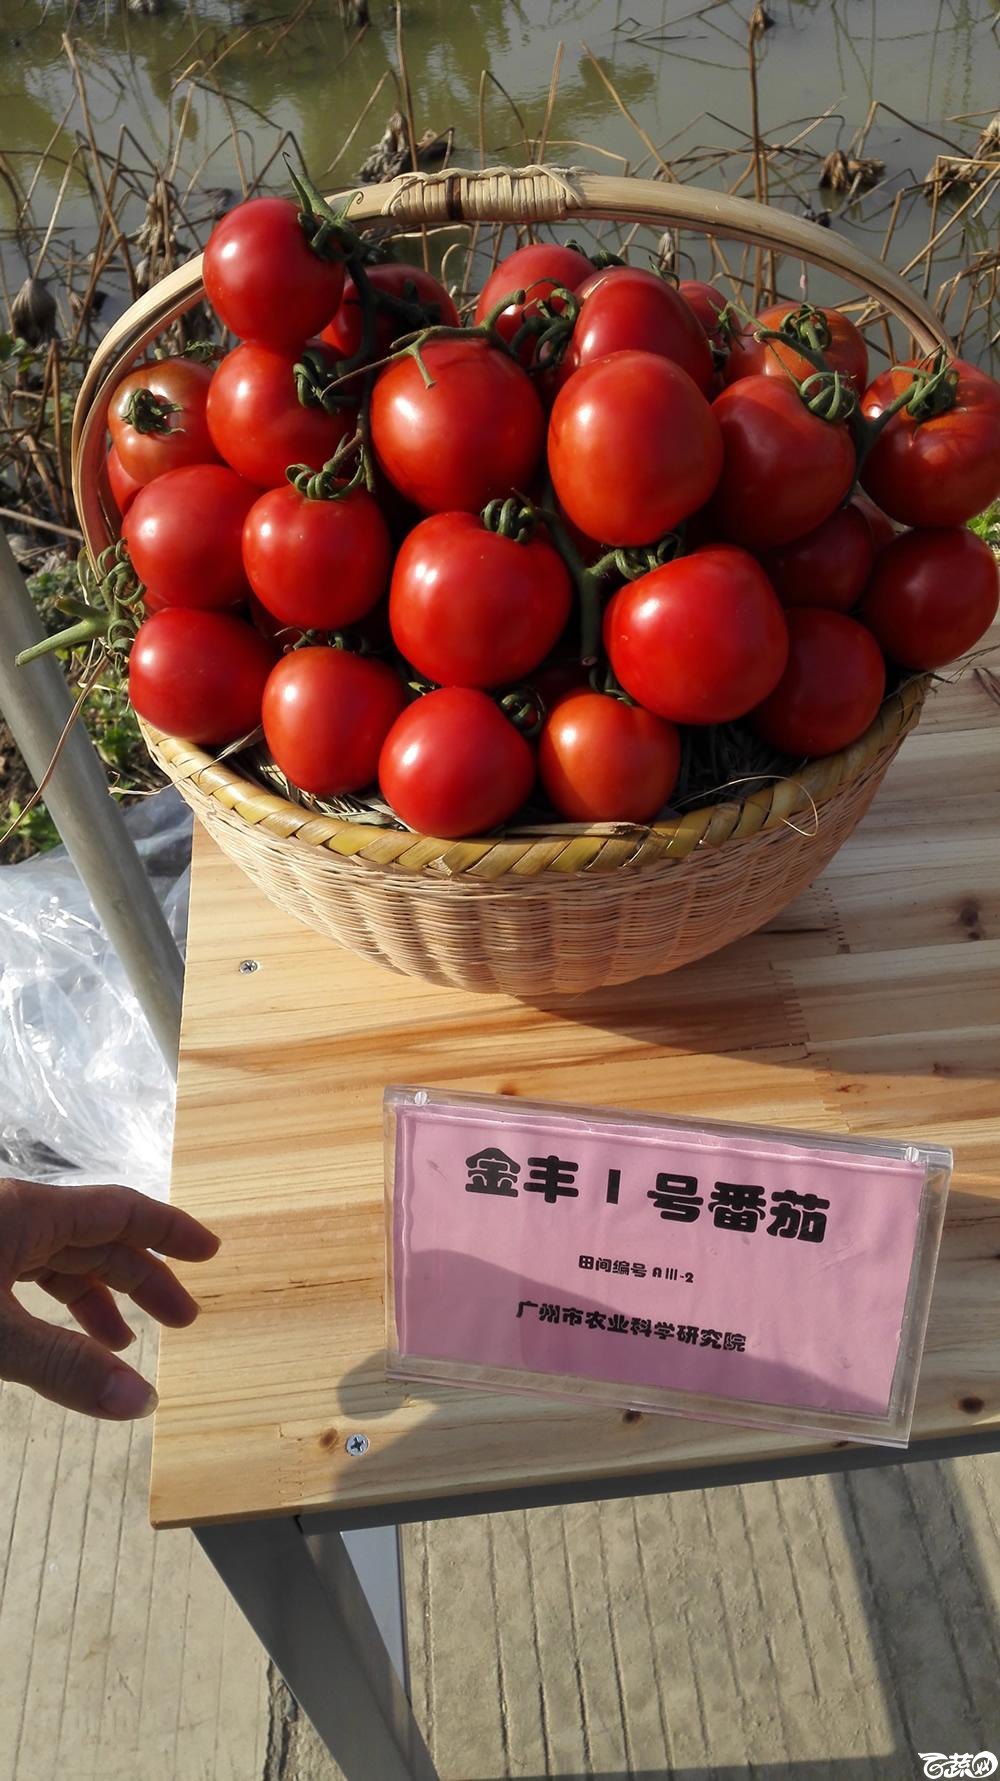 2014年12月10号广州市农科院南沙秋季蔬菜新品种展示会_番茄_002.jpg